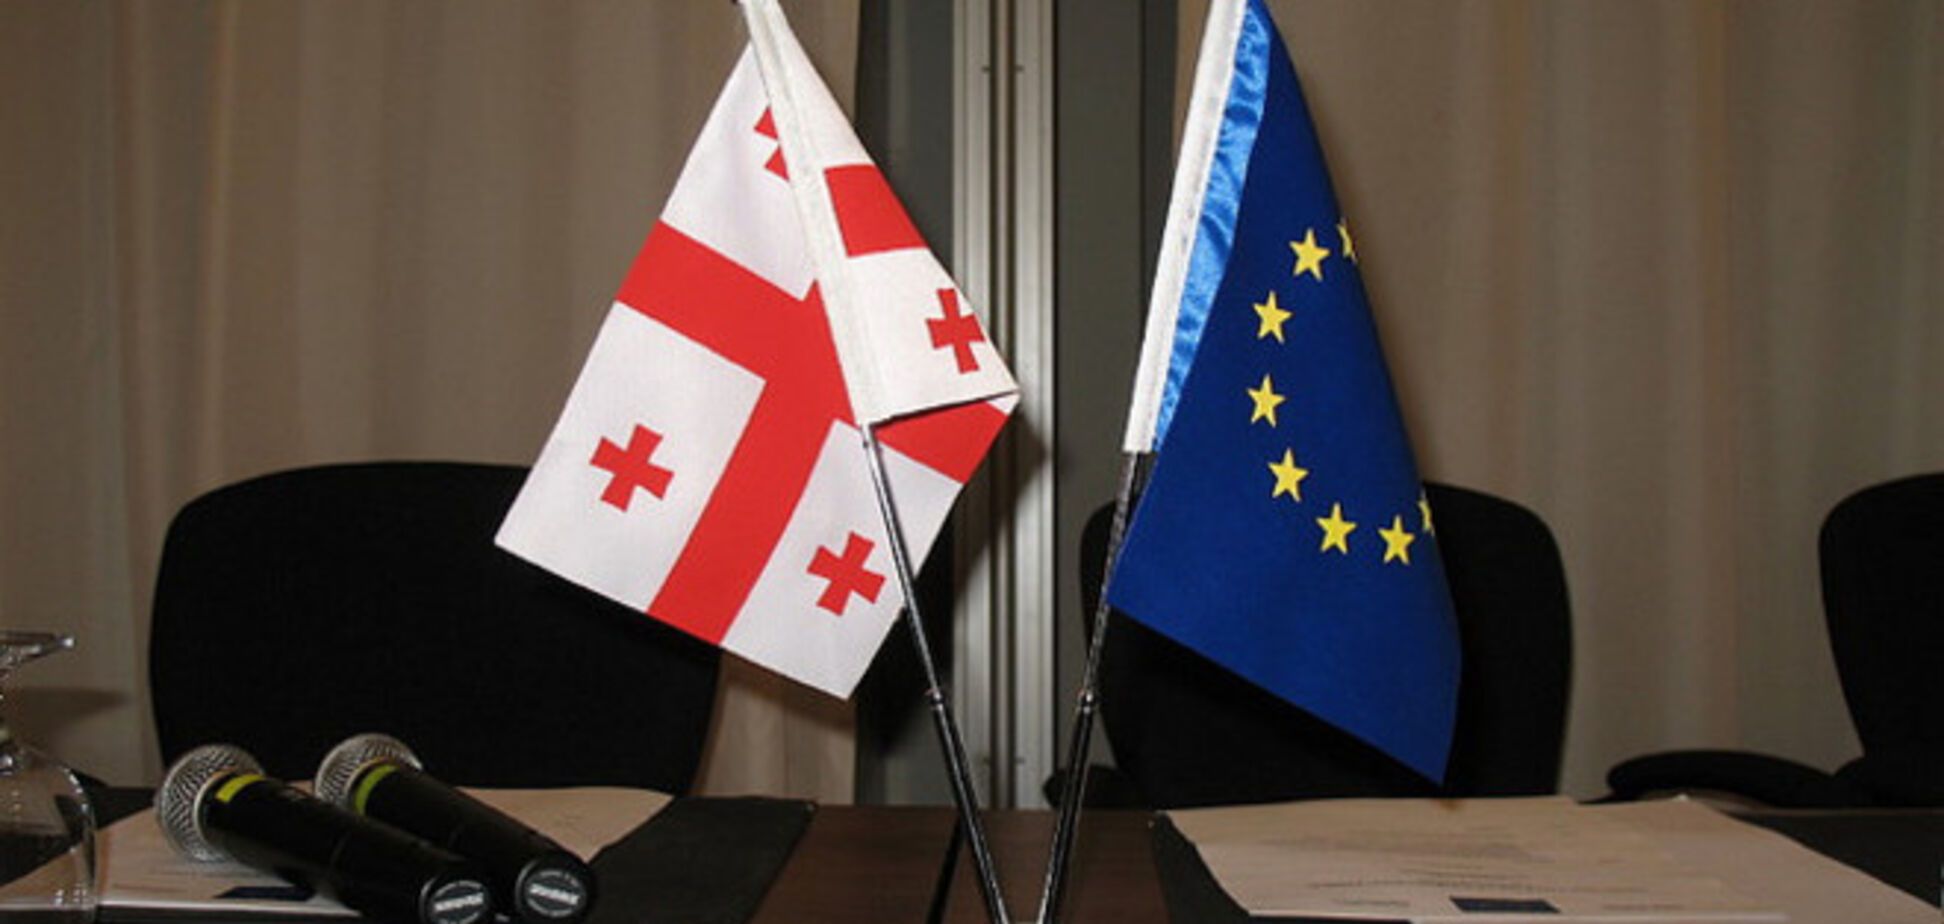 Грузия ратифицировала Соглашение об ассоциации с ЕС